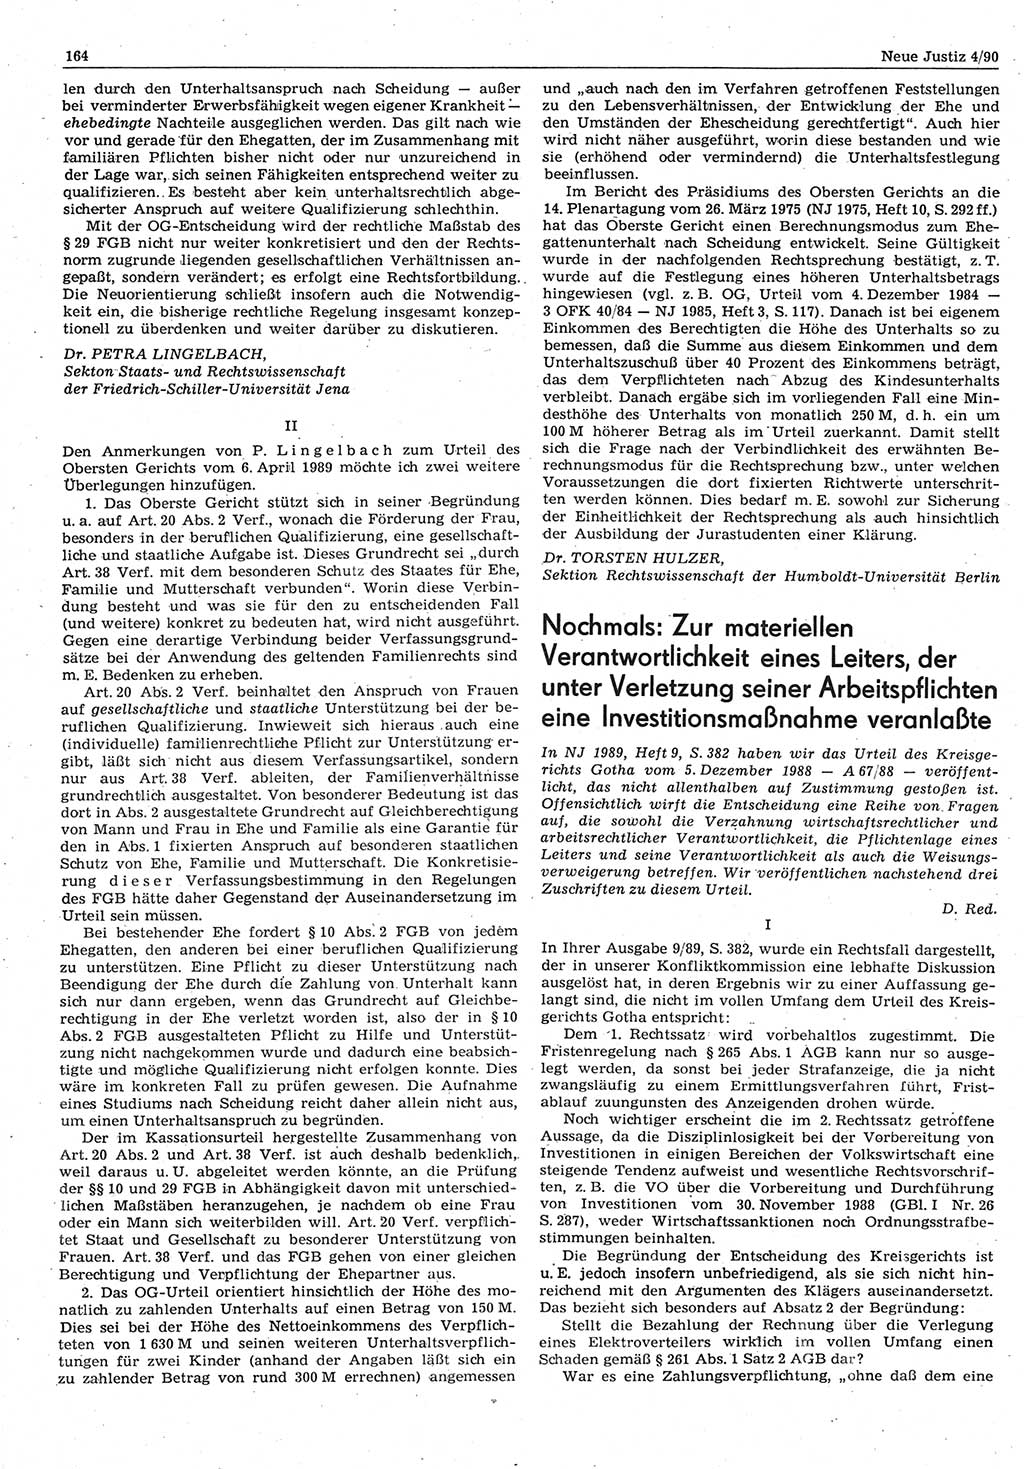 Neue Justiz (NJ), Zeitschrift für Rechtsetzung und Rechtsanwendung [Deutsche Demokratische Republik (DDR)], 44. Jahrgang 1990, Seite 164 (NJ DDR 1990, S. 164)